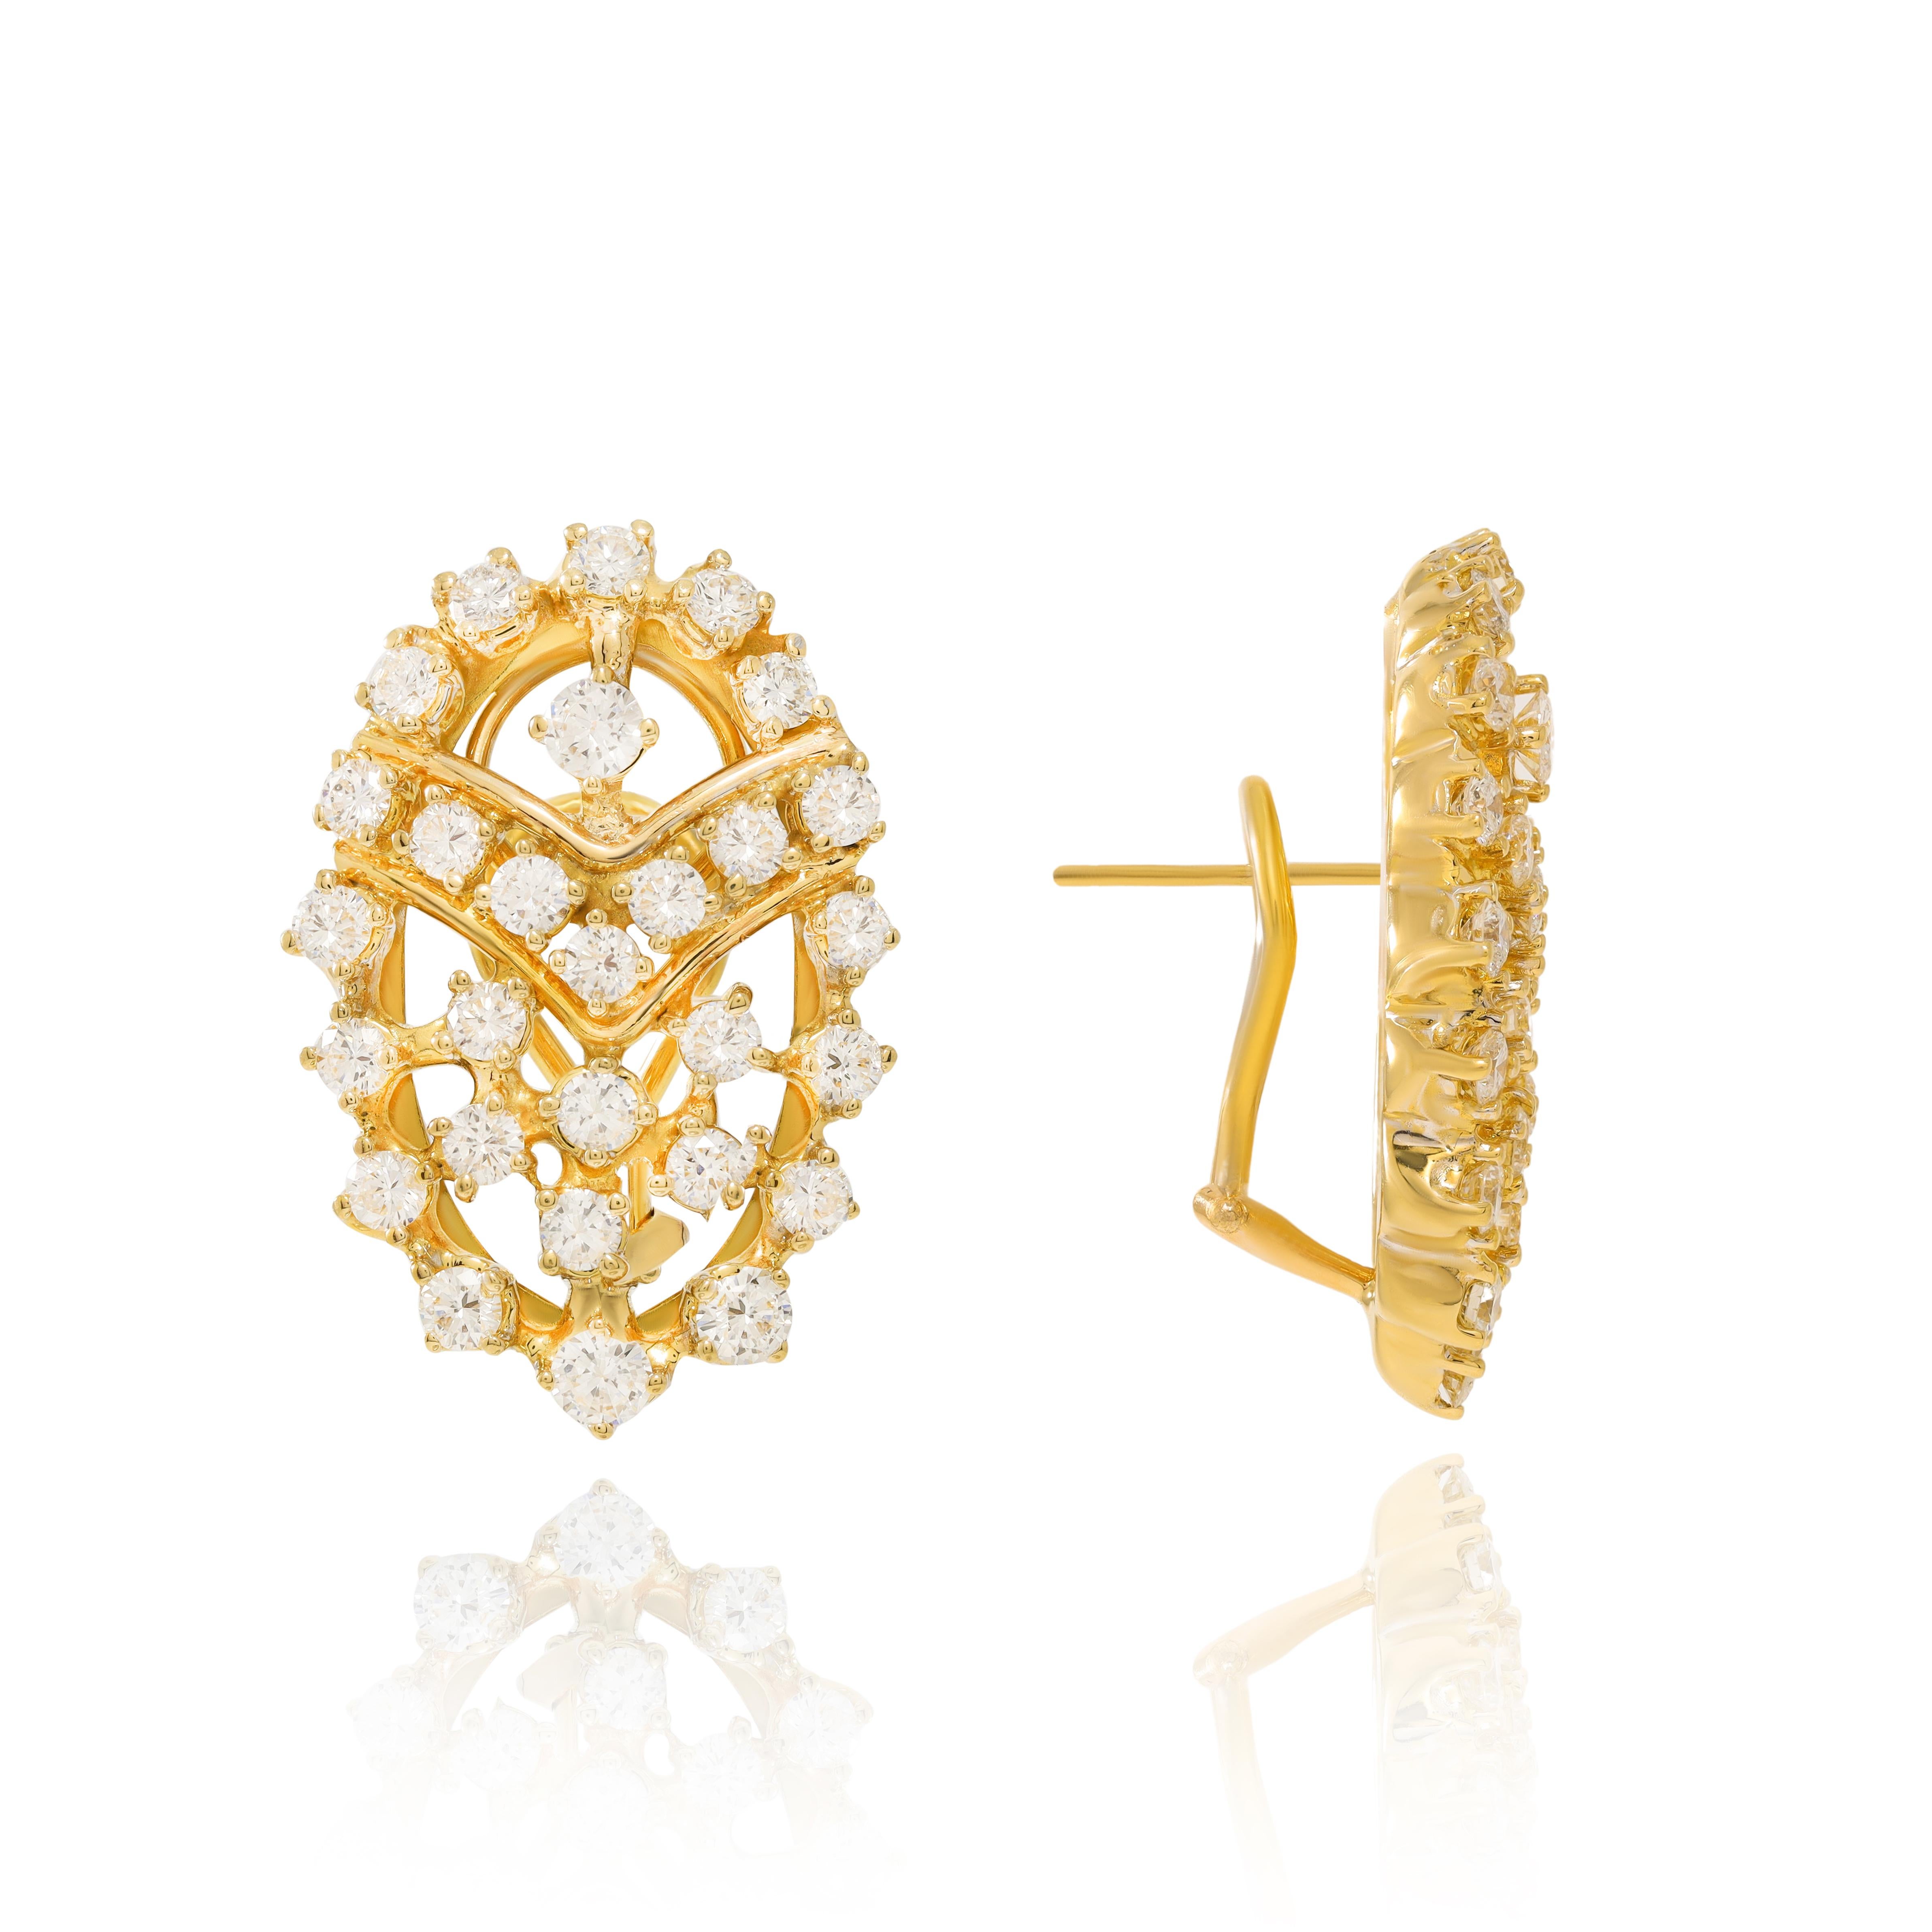 Boucles d'oreilles en or jaune 18 carats ornées de 5.00 cts tw de diamants.
A&M est un fournisseur de premier plan de bijoux fins de qualité supérieure depuis plus de 35 ans.
Diana M-One est un magasin unique pour tous vos achats de bijoux,